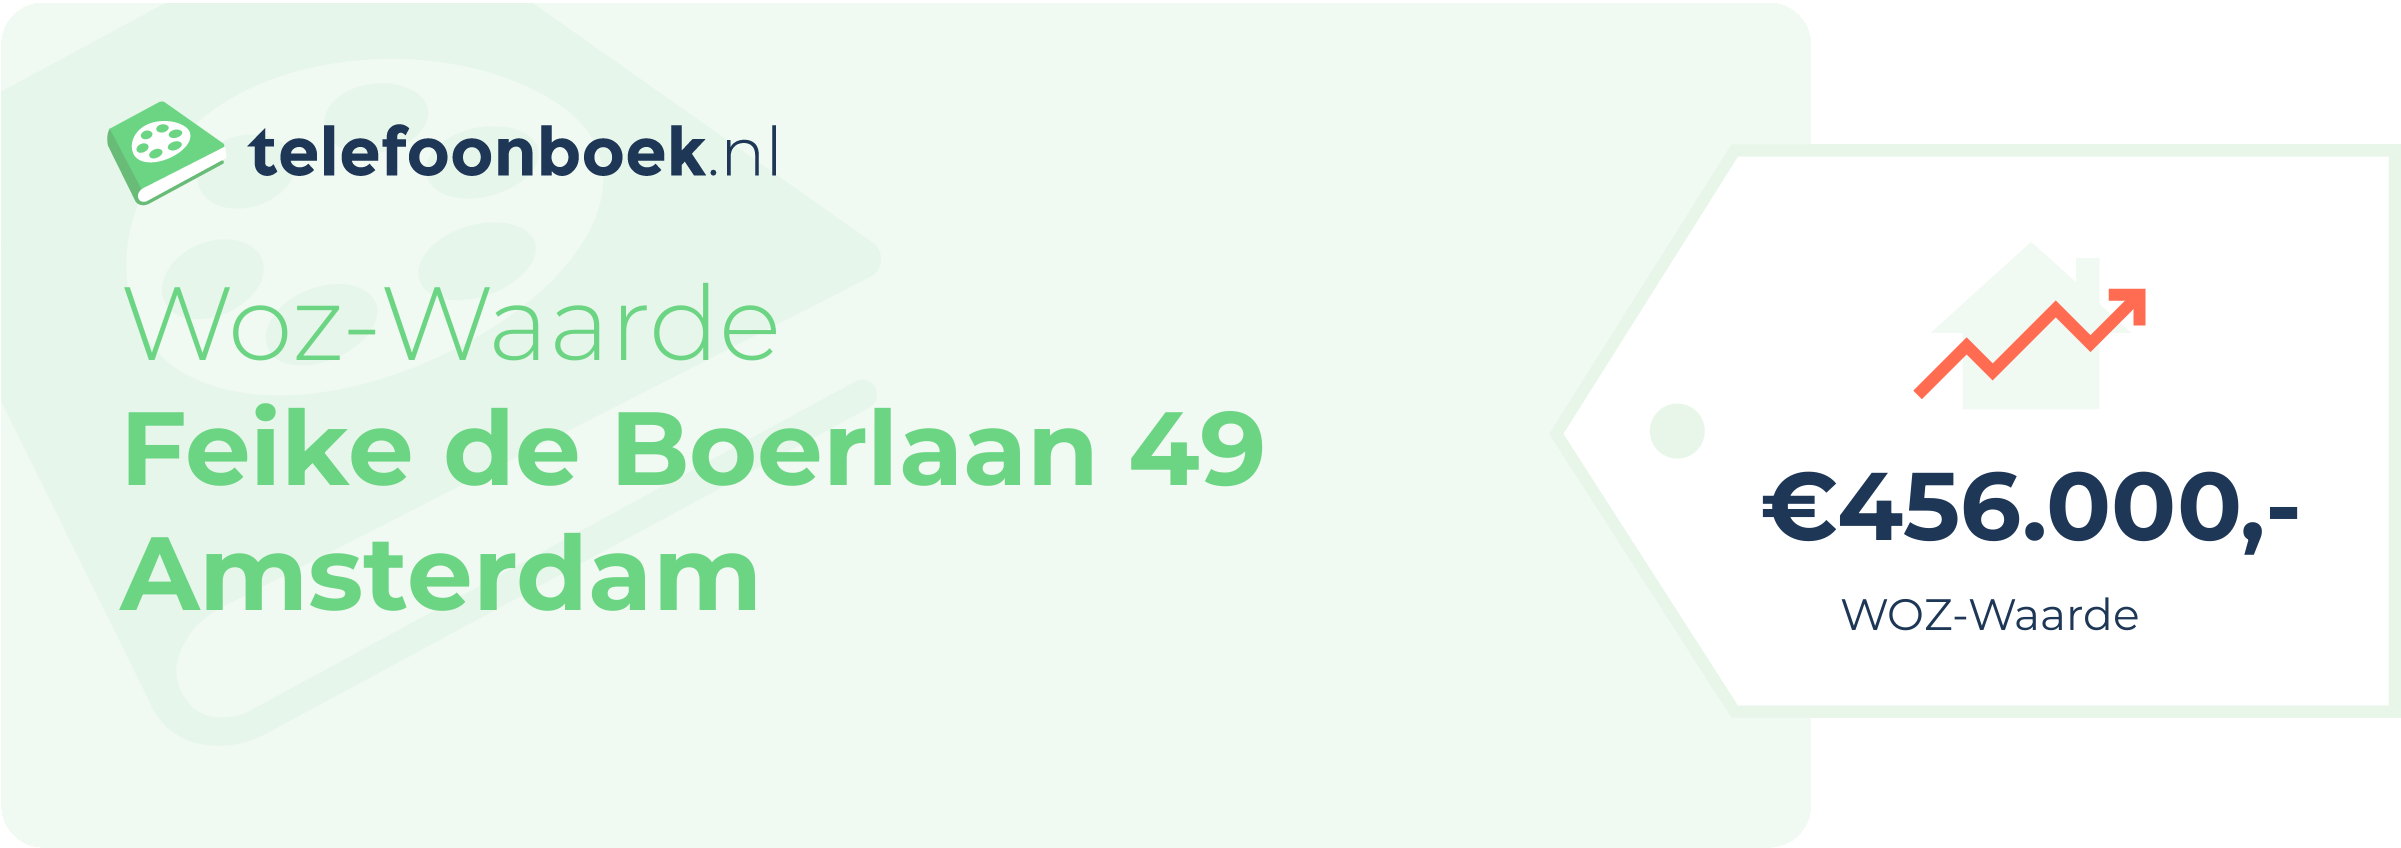 WOZ-waarde Feike De Boerlaan 49 Amsterdam